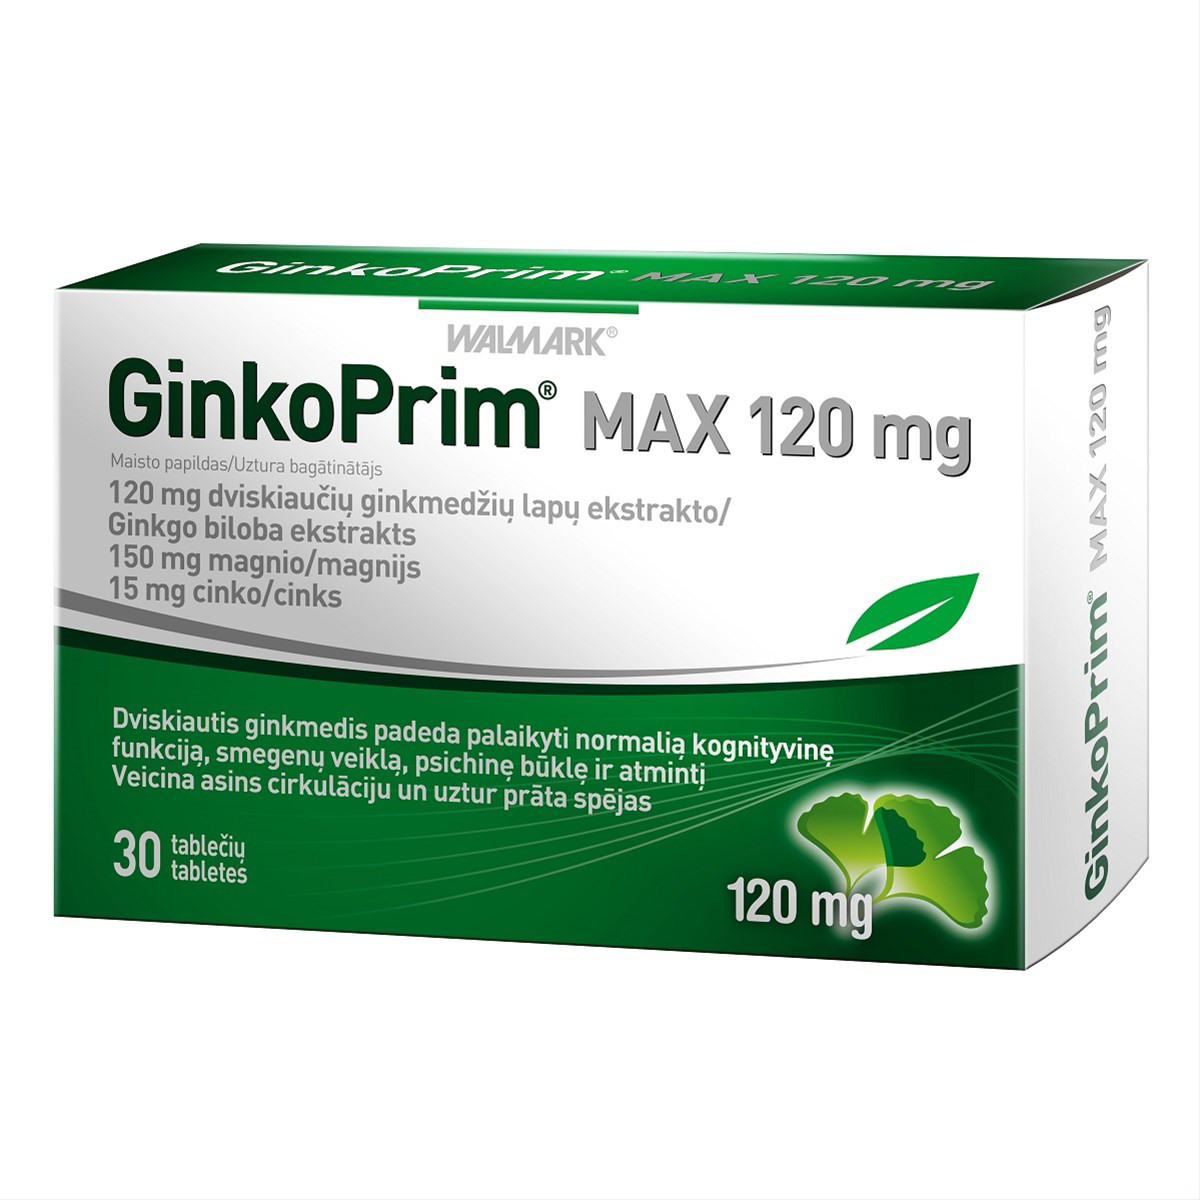 WALMARK GINKOPRIM MAX, 120 mg, 30 tablečių